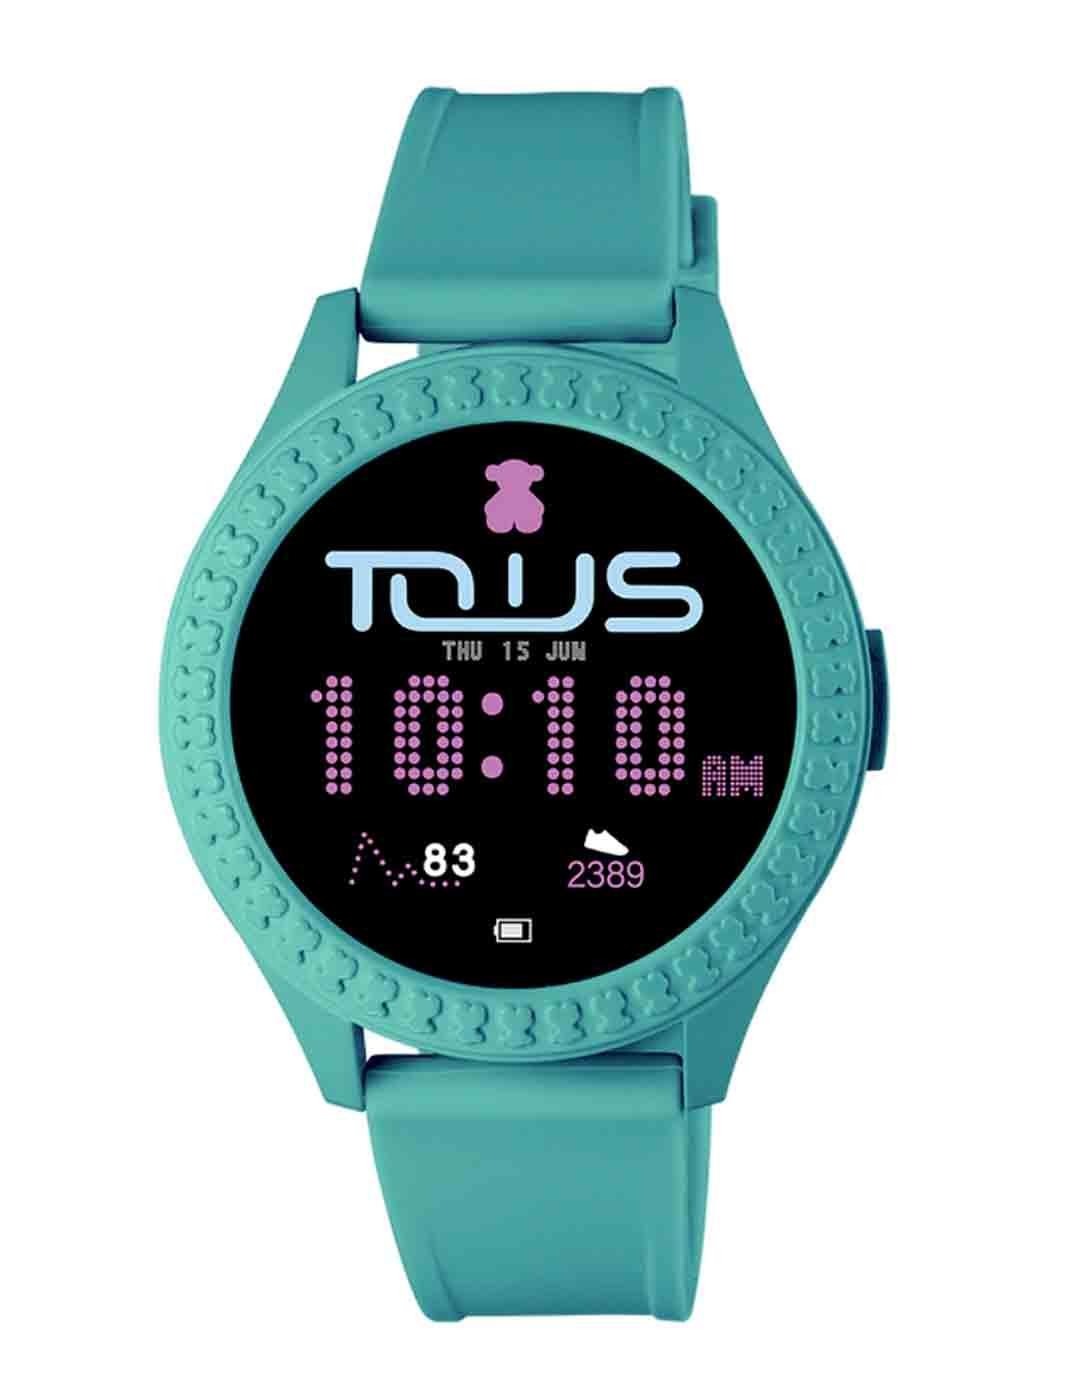 Reloj smartwatch Smarteen Connect con correa de silicona rosa